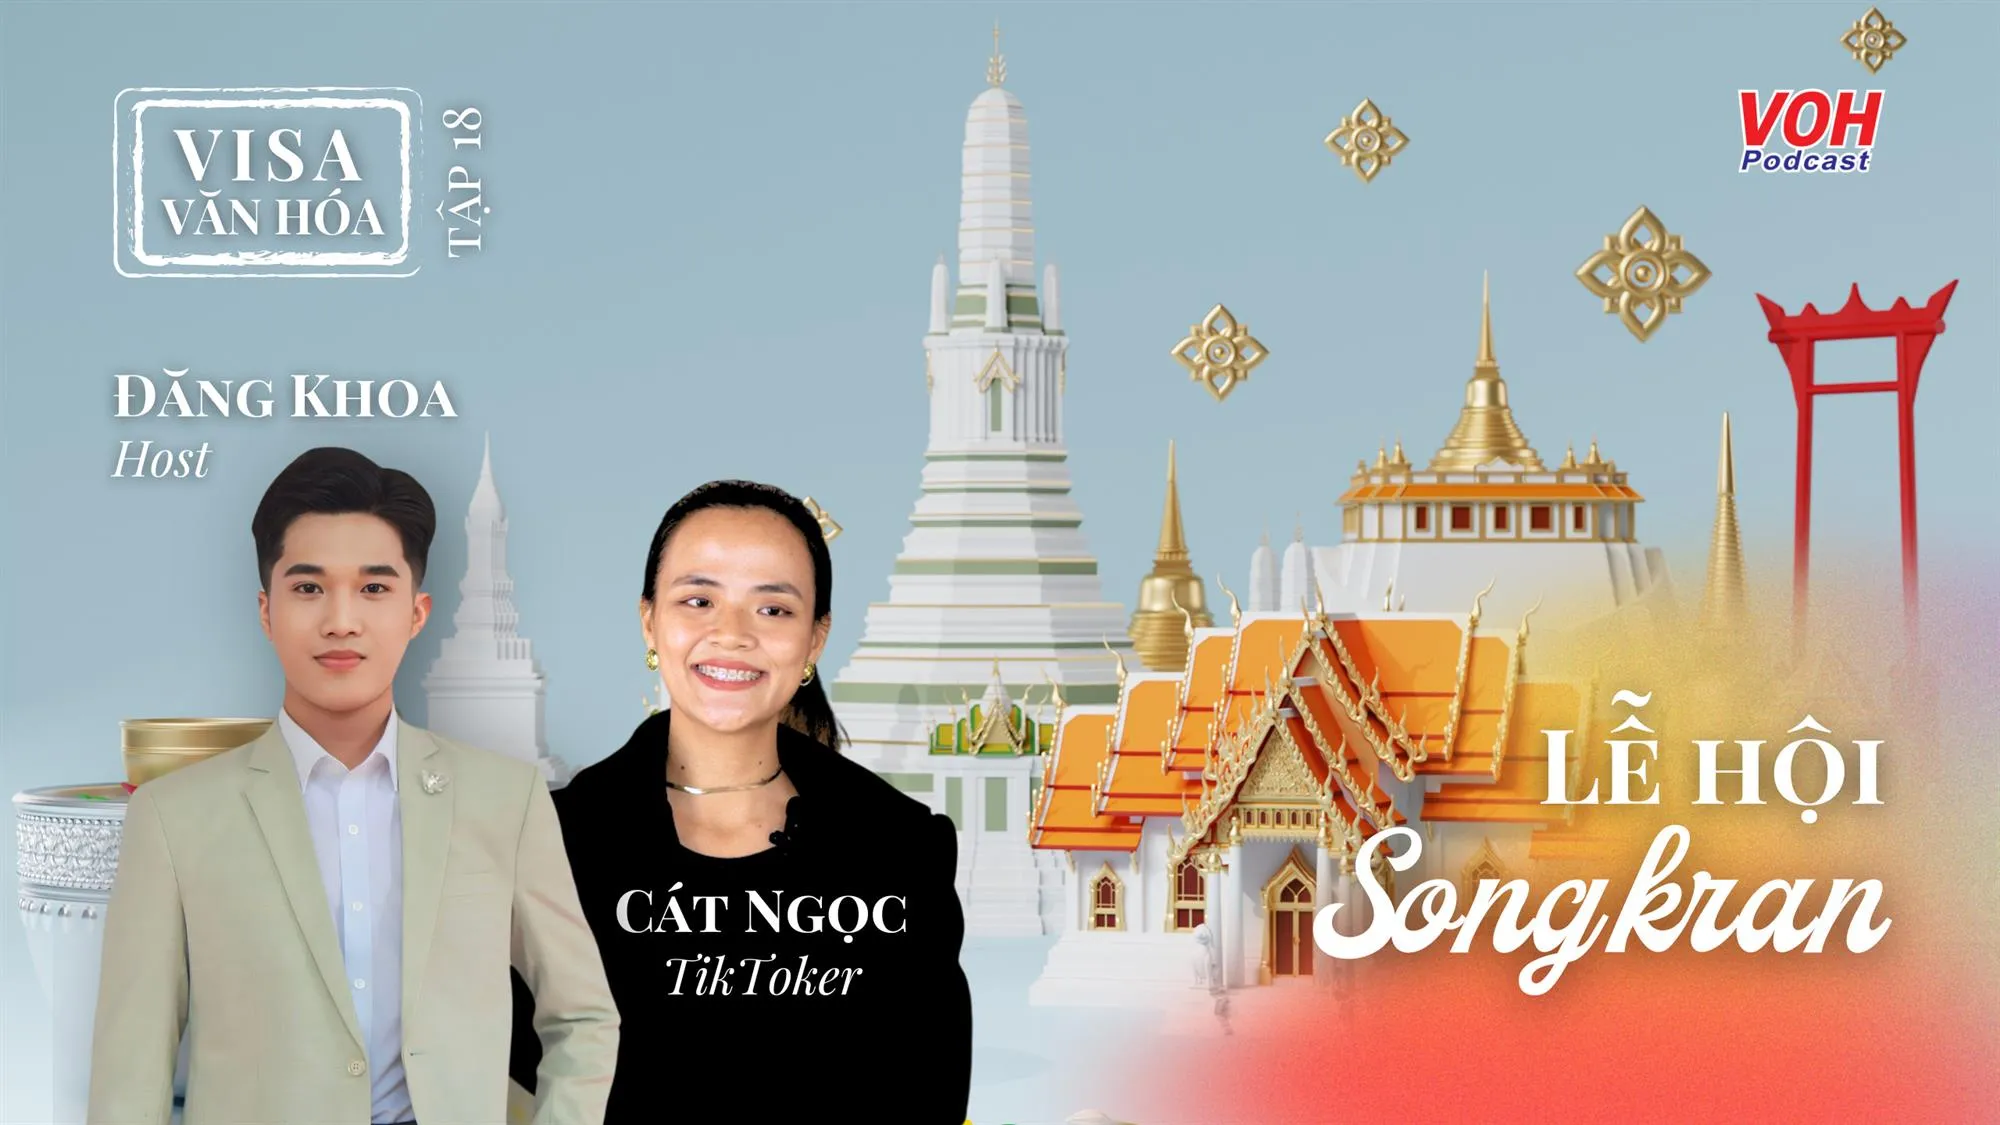 #018. Songkran - Lễ hội văn hóa độc đáo ở Thái Lan